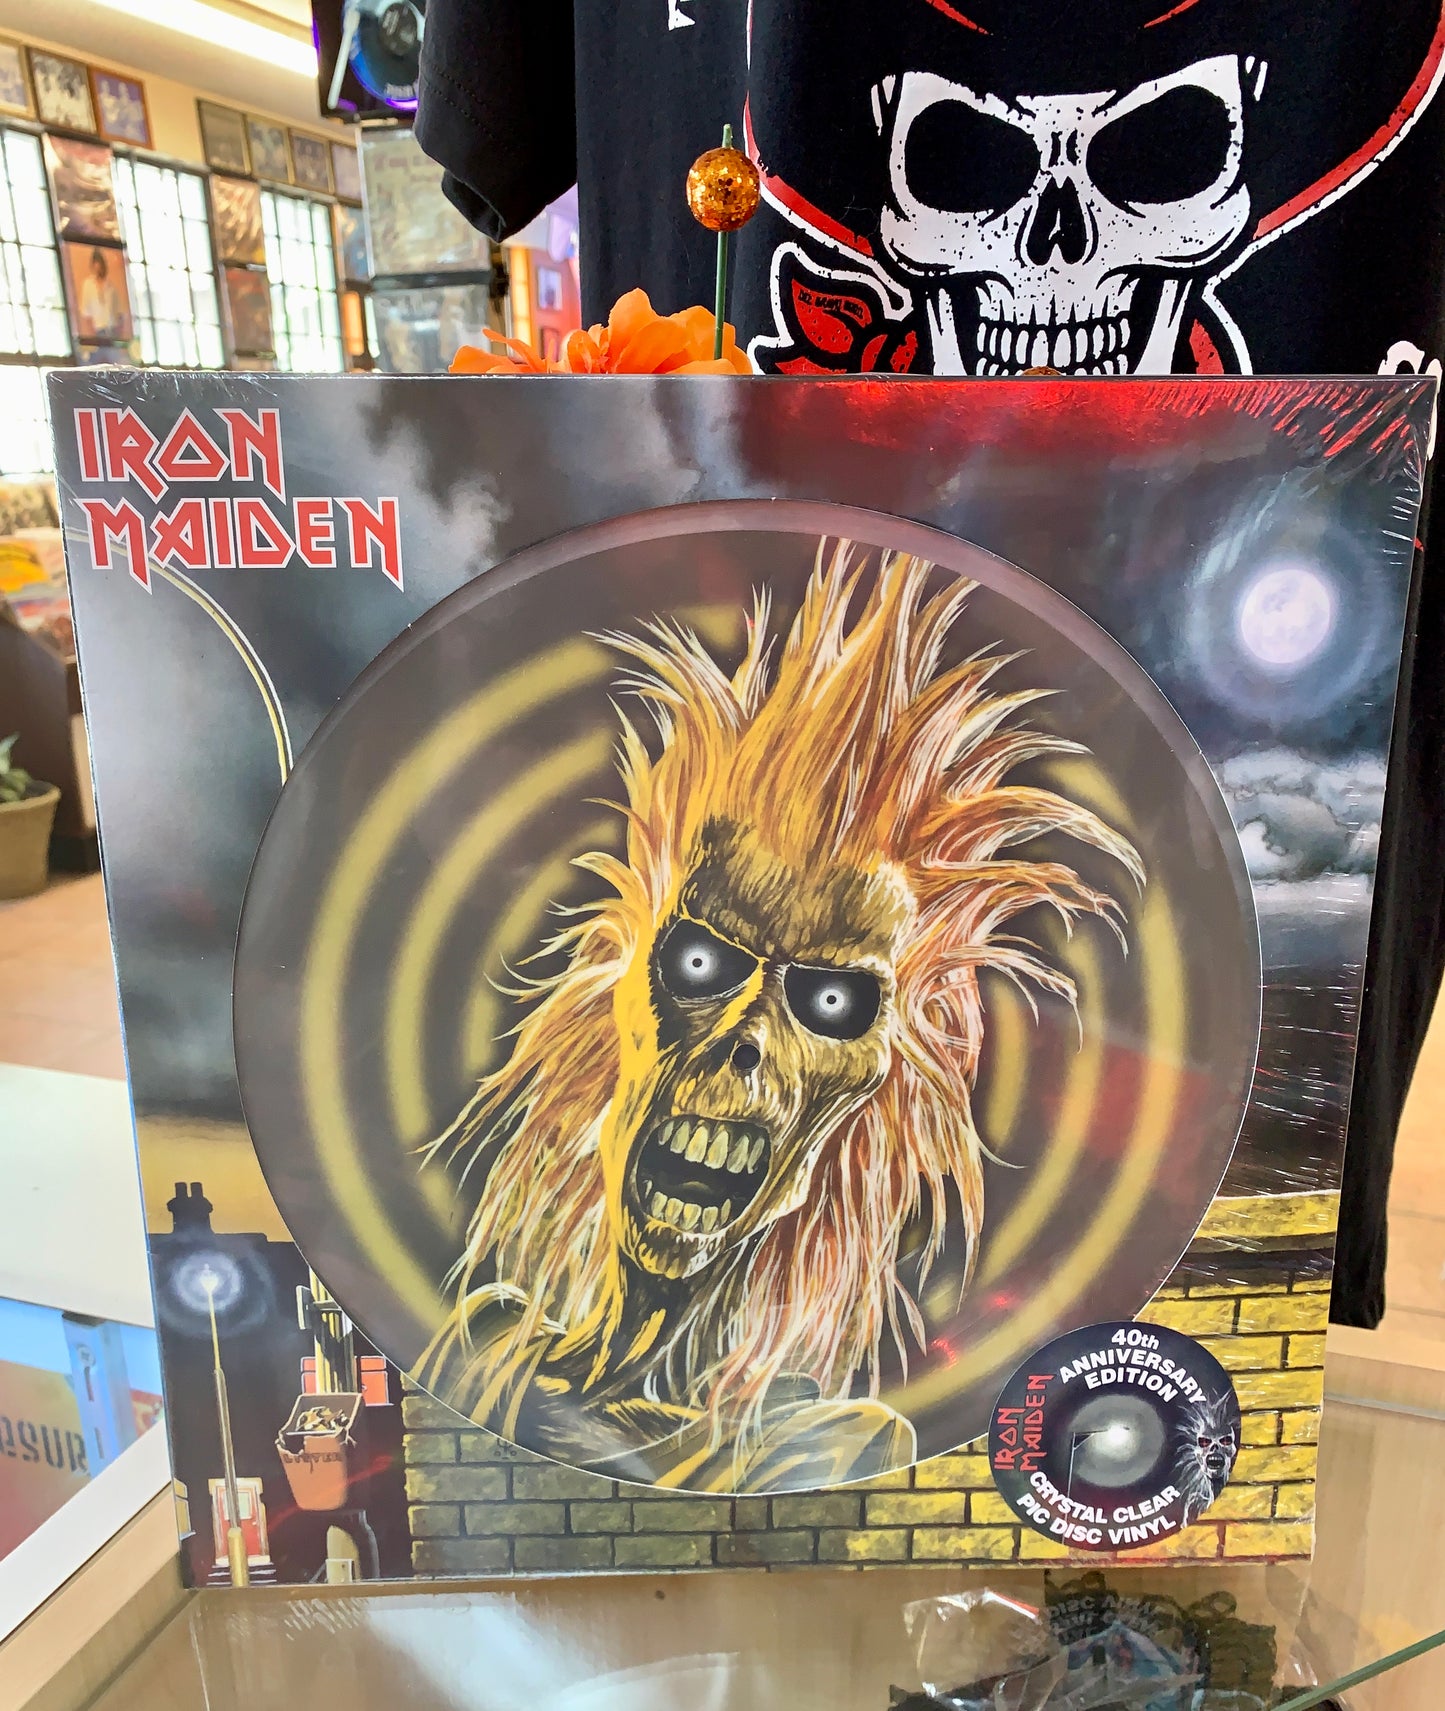 Iron Maiden - Iron Maiden (Picture Vinyl) RSD Black Friday